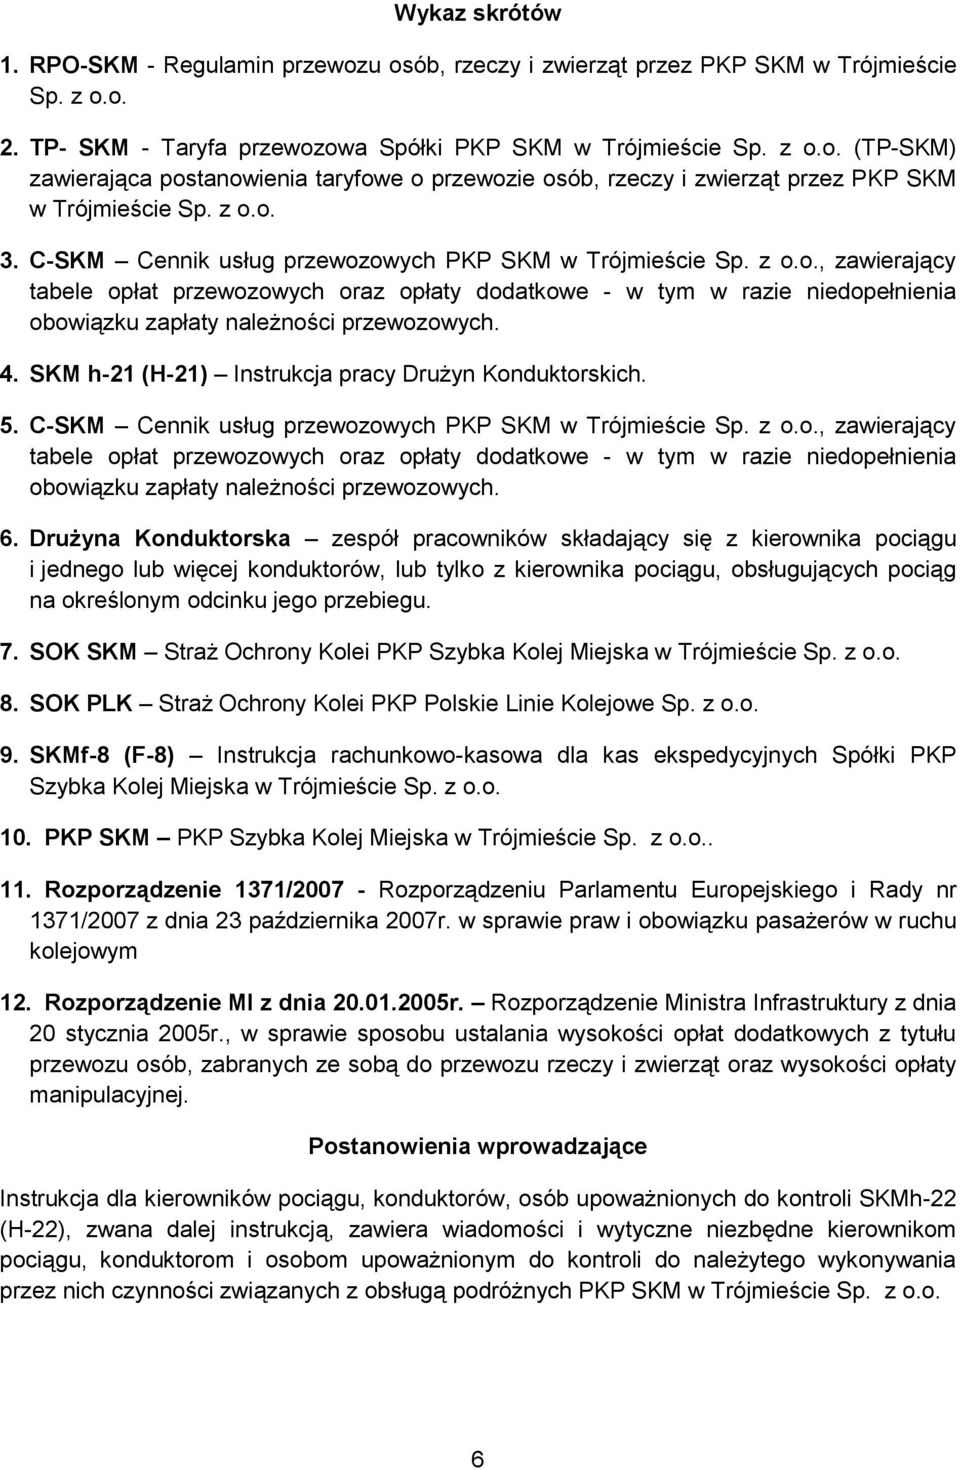 4. SKM h-21 (H-21) Instrukcja pracy Drużyn Konduktorskich. 5. C-SKM Cennik usług przewozowych PKP SKM w Trójmieście Sp. z o.o., zawierający tabele opłat przewozowych oraz opłaty dodatkowe - w tym w razie niedopełnienia obowiązku zapłaty należności przewozowych.